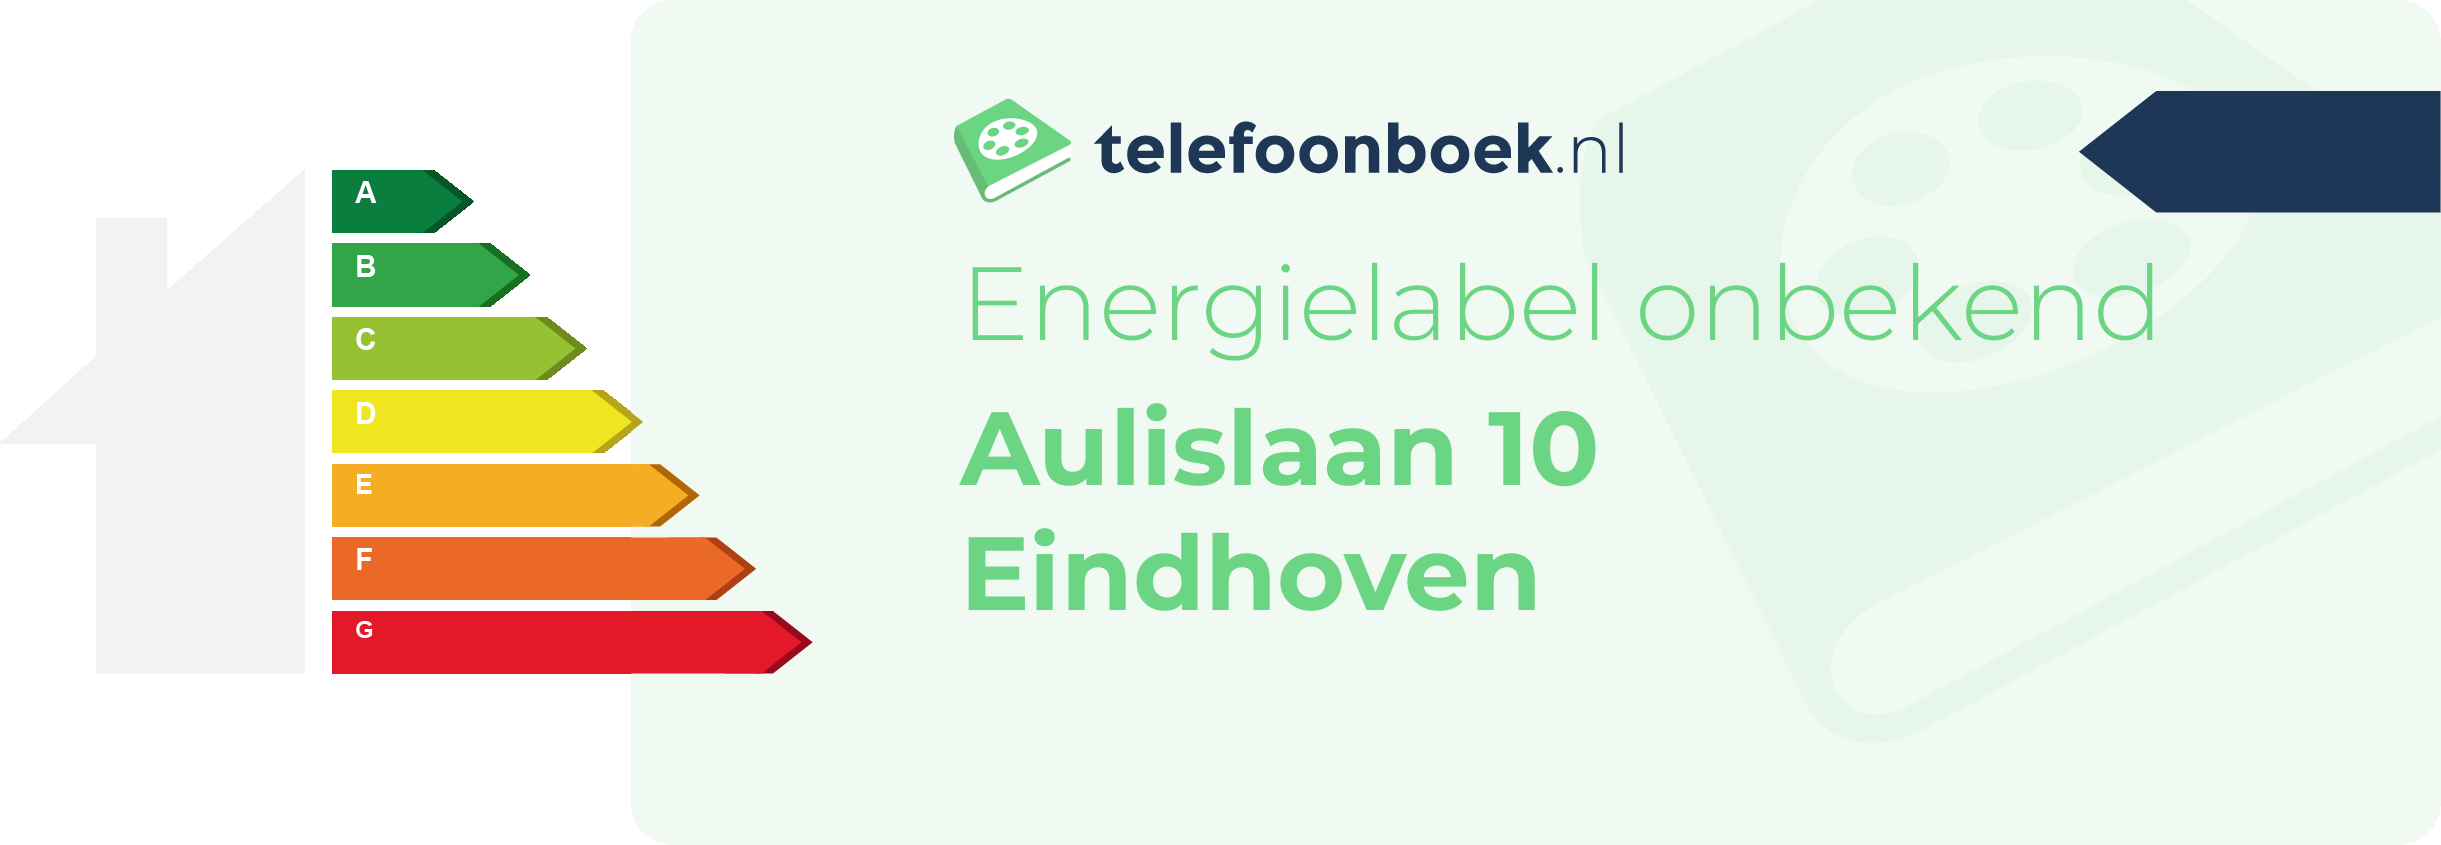 Energielabel Aulislaan 10 Eindhoven